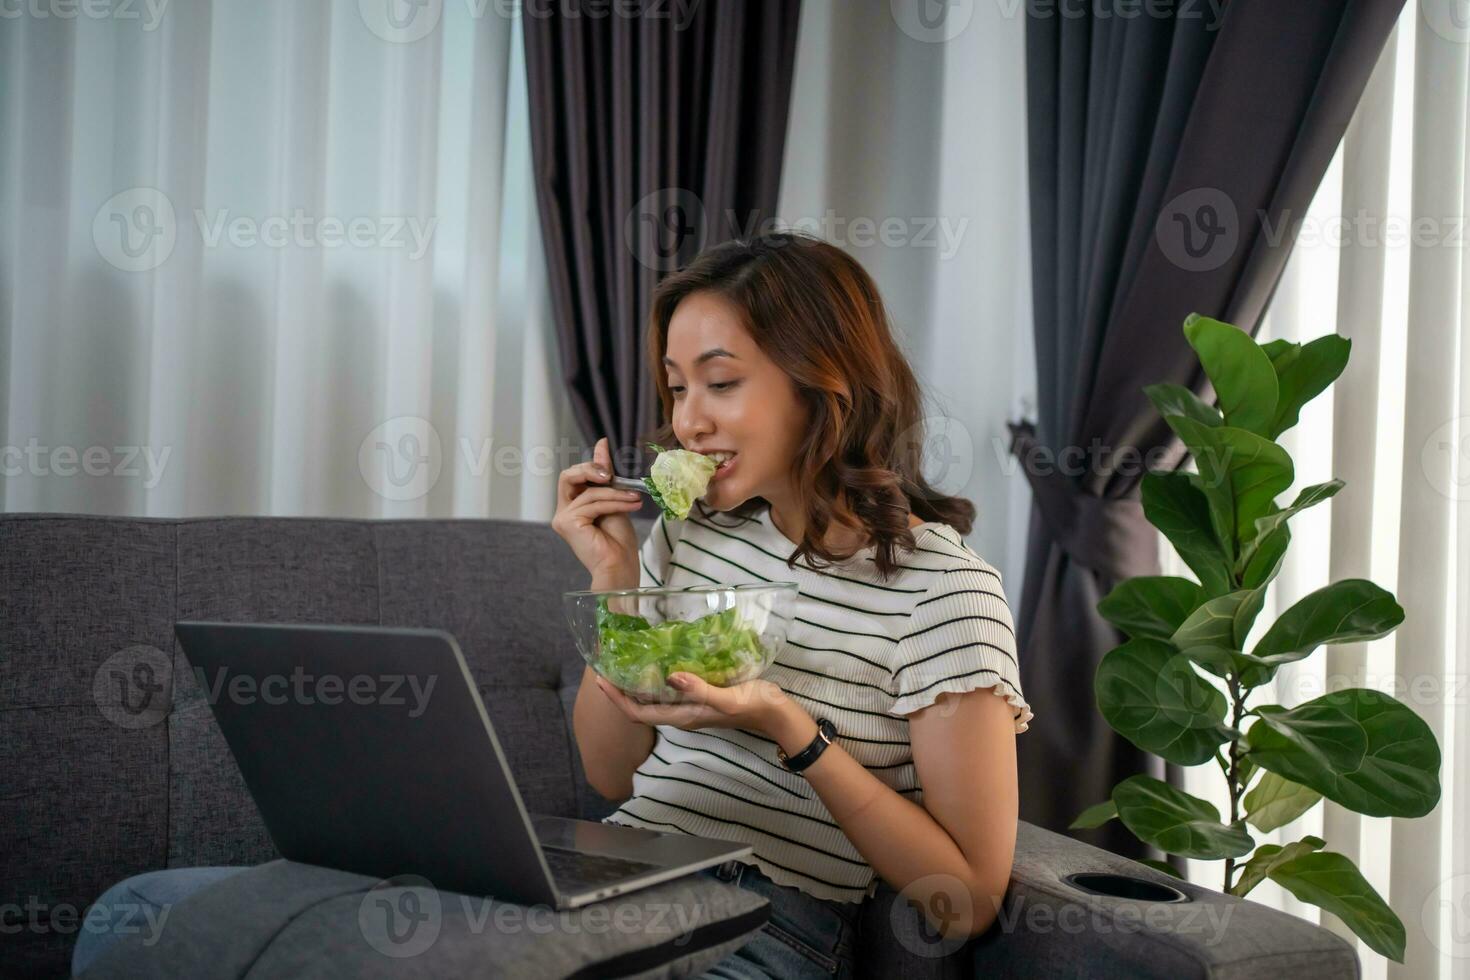 vrouw aan het eten gezond salade voor lunch terwijl werken met laptop Bij huis kantoor. foto